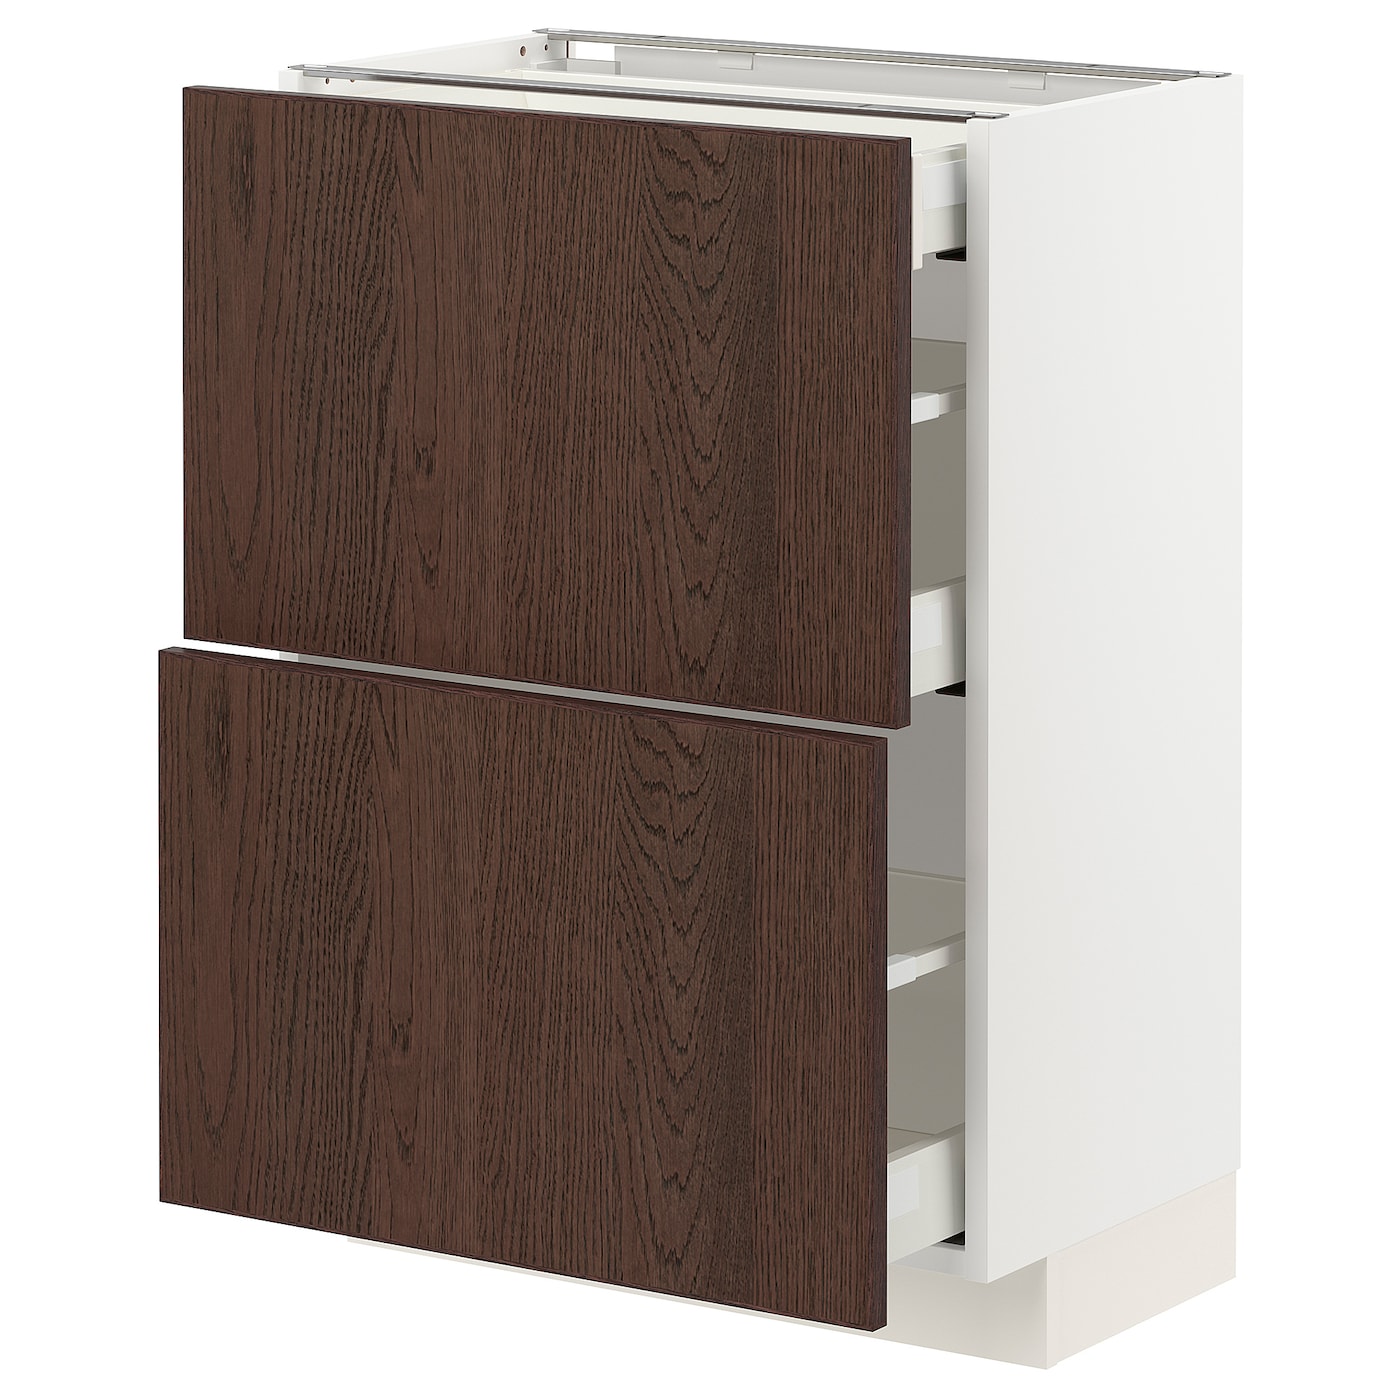 Напольный кухонный шкаф  - IKEA METOD MAXIMERA, 88x39,2x60см, белый/коричневый, МЕТОД МАКСИМЕРА ИКЕА